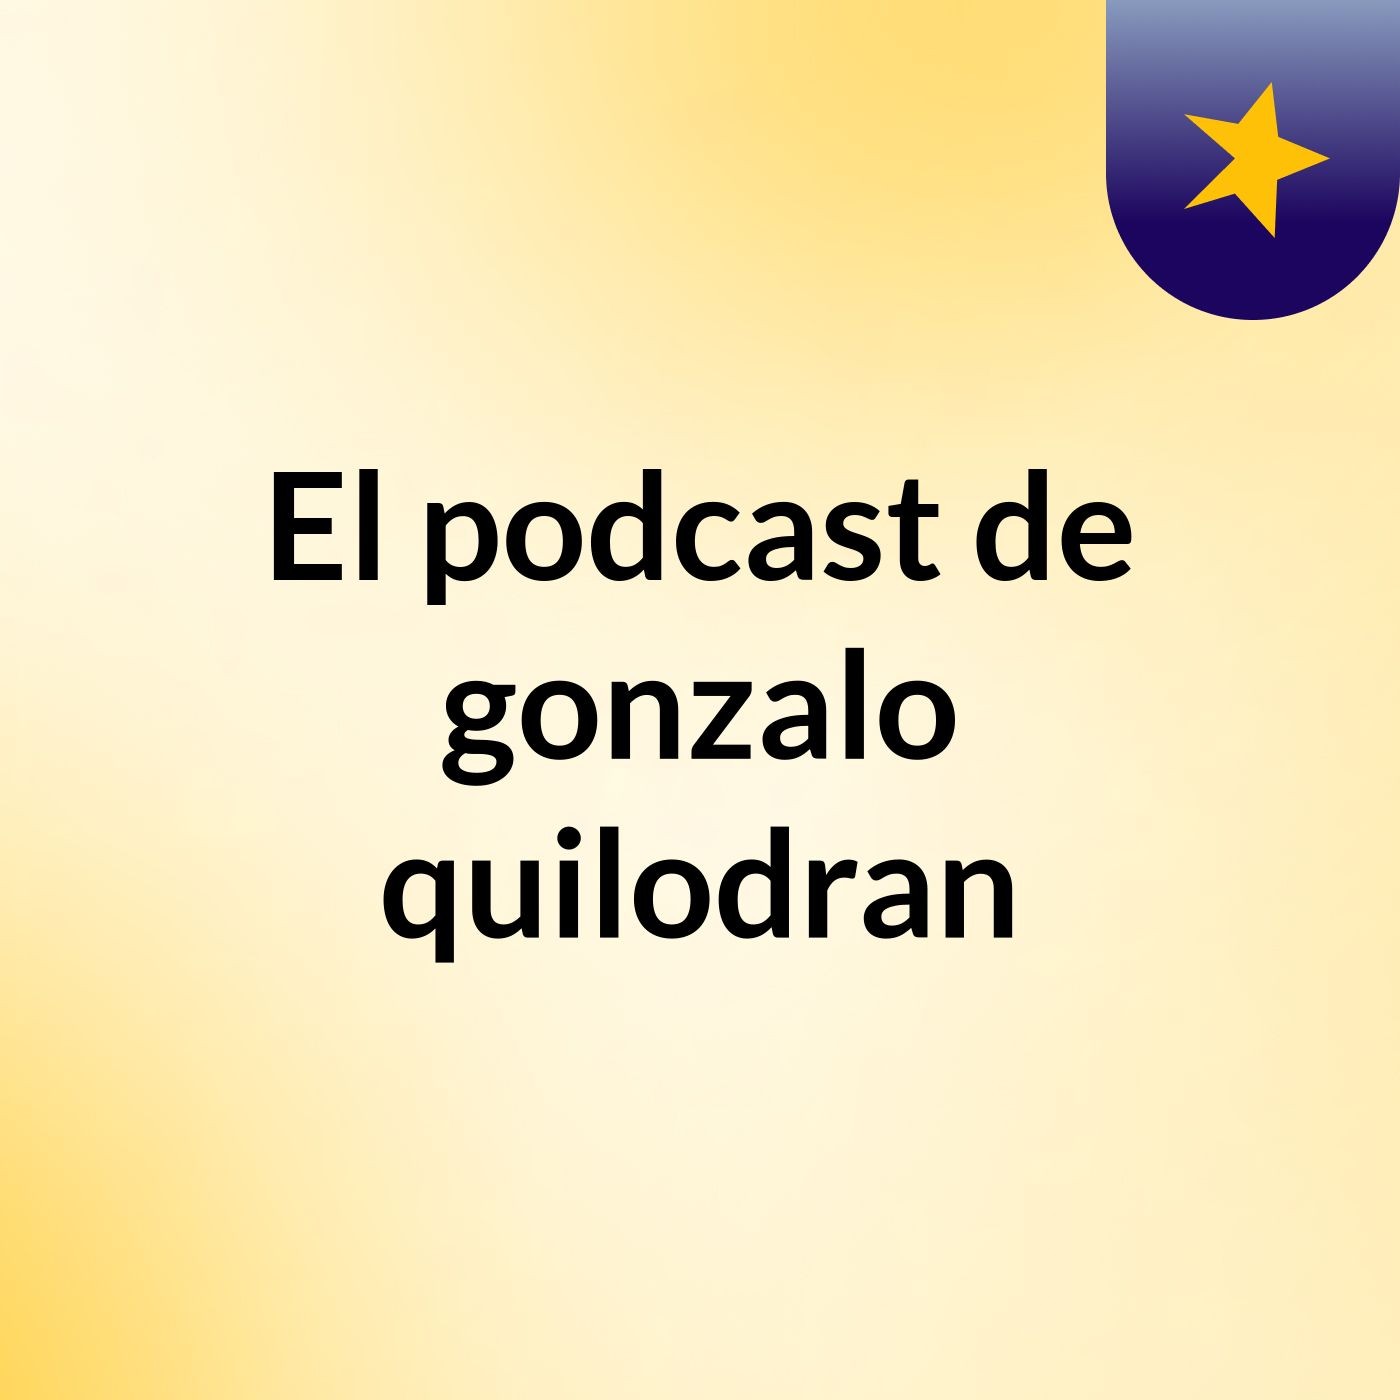 El podcast de gonzalo quilodran